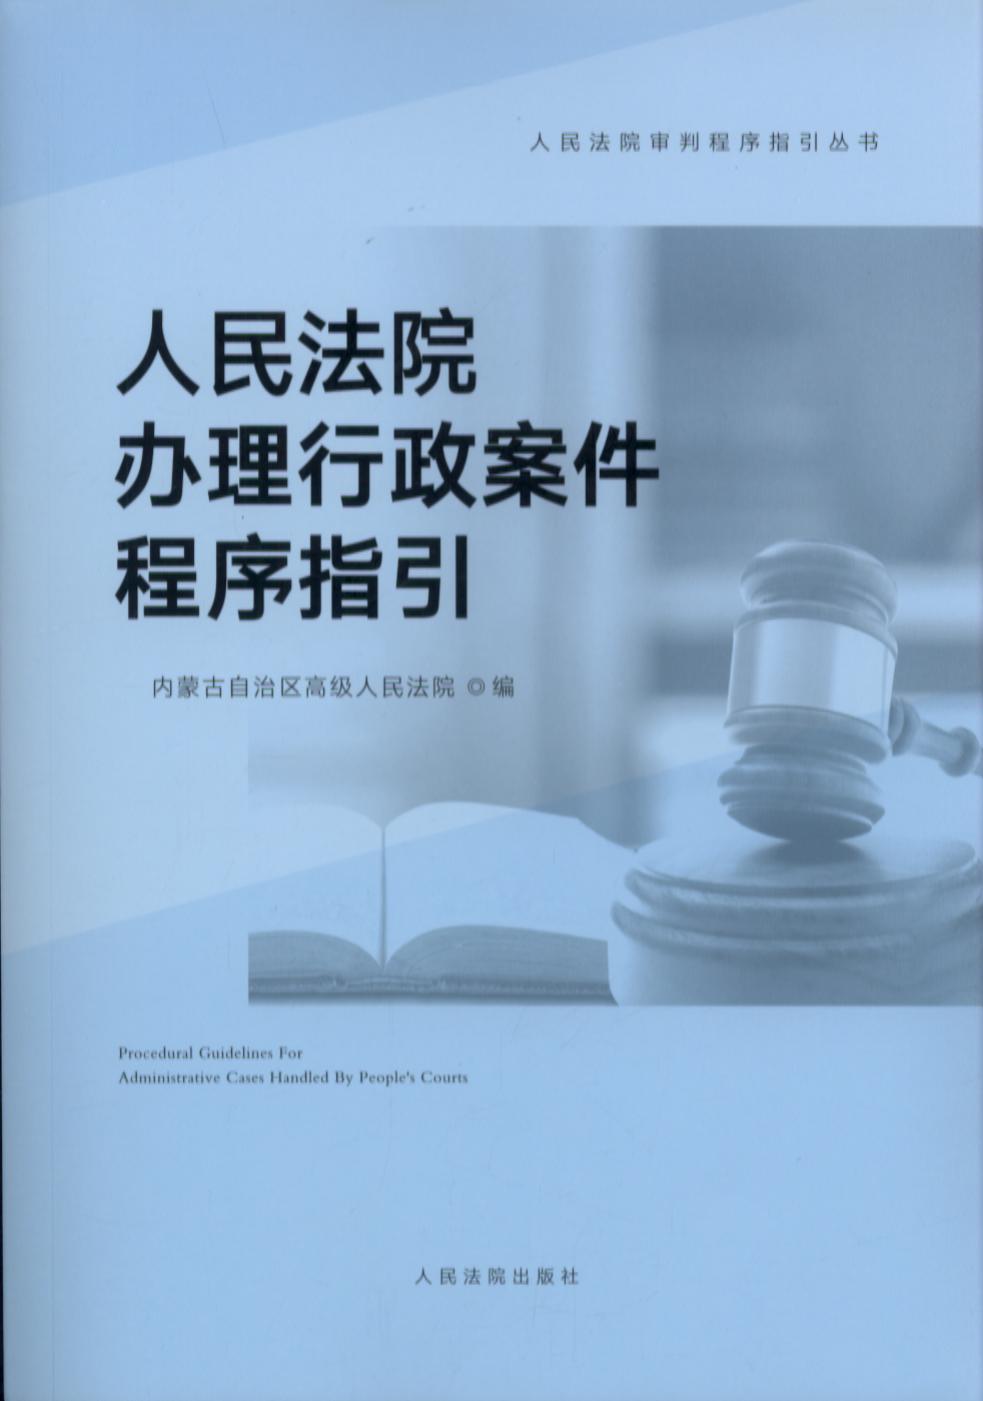 人民法院办理行政案件程序指引/人民法院审判程序指引丛书